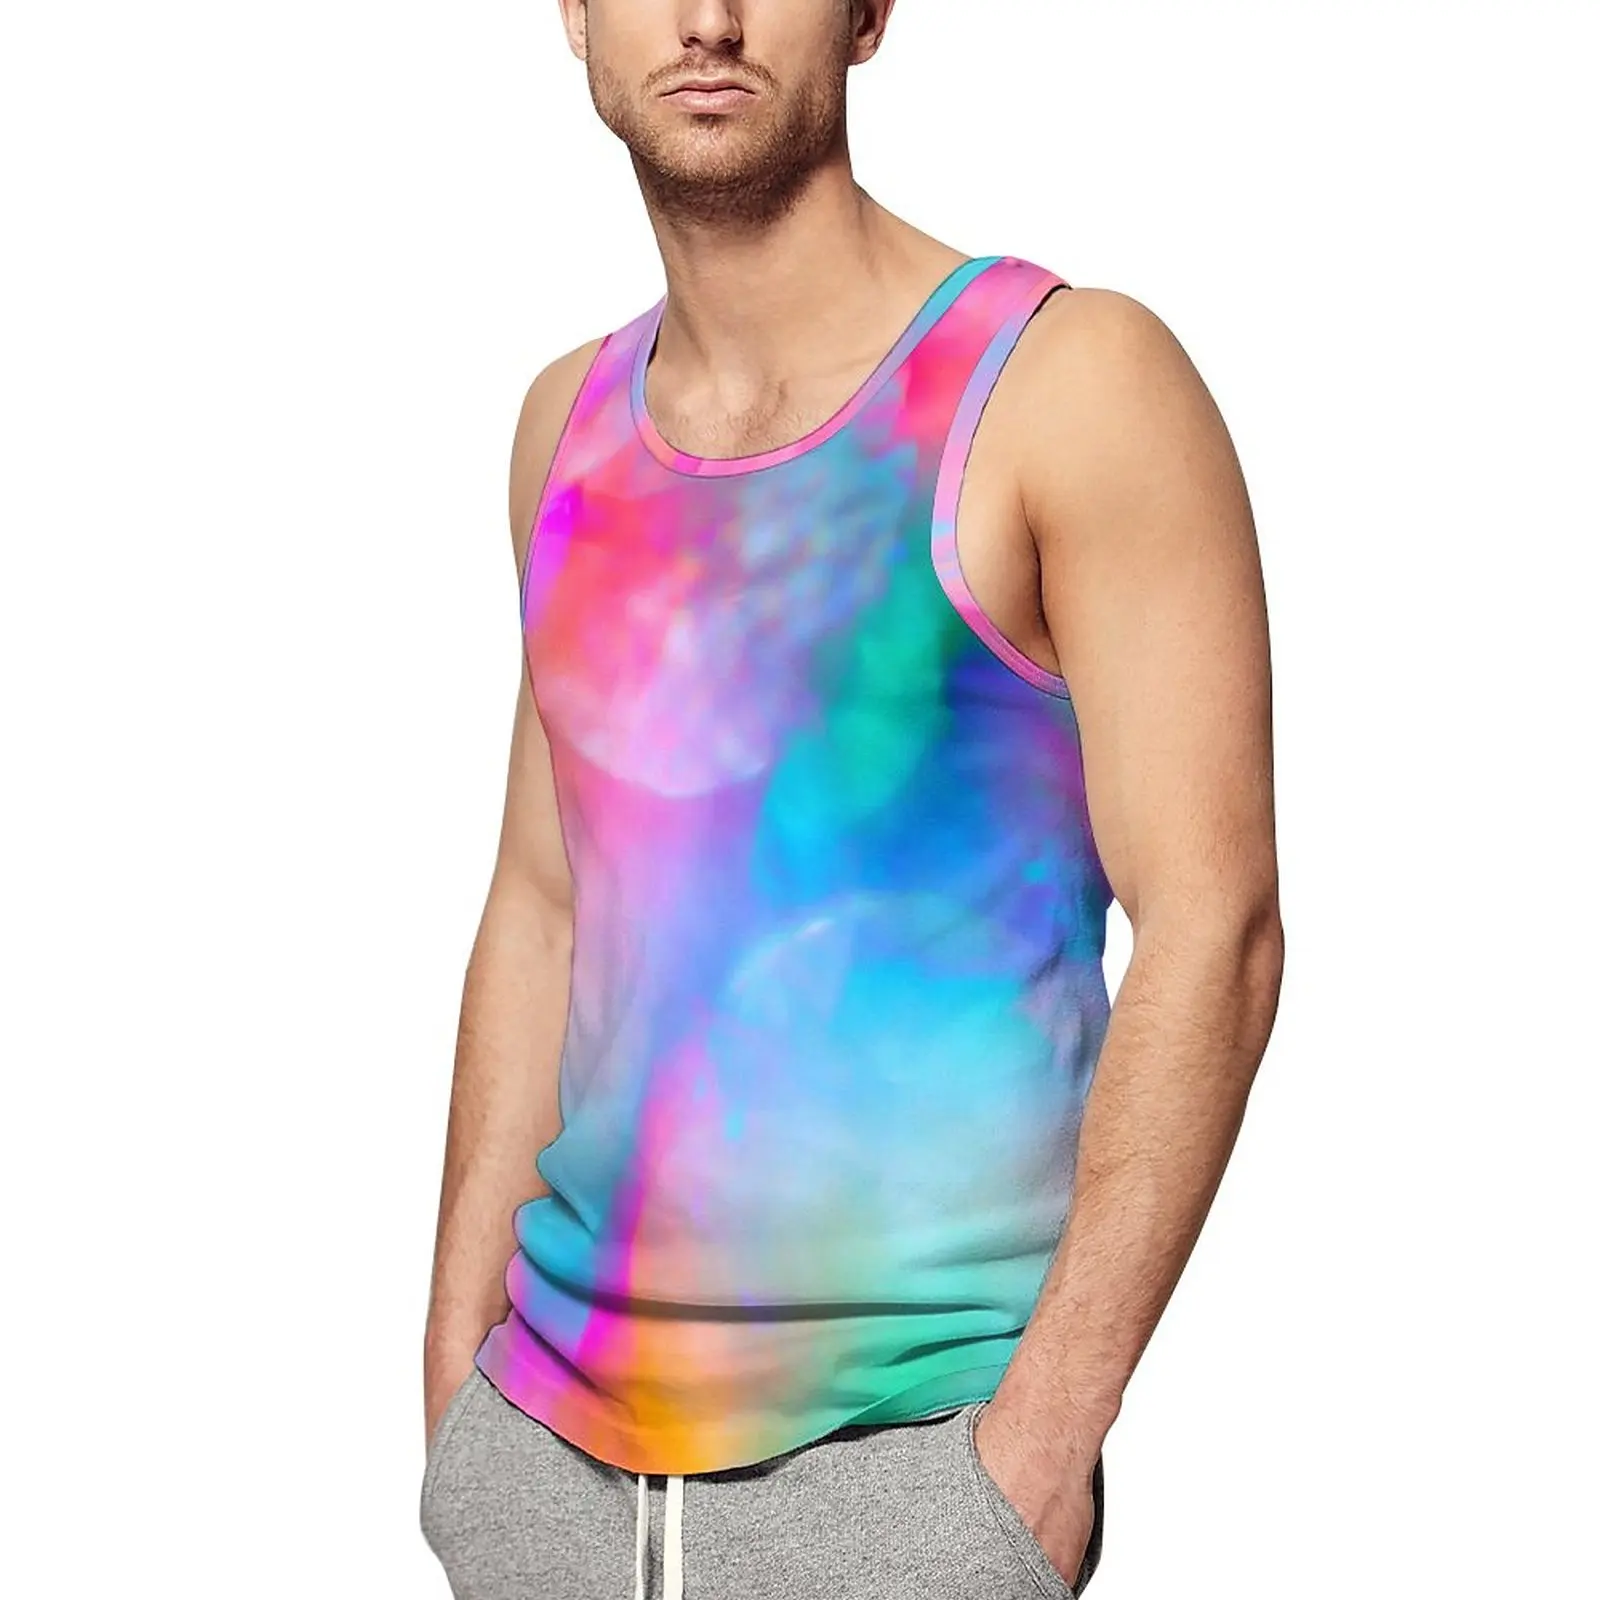 

Разноцветная майка с радугой, мужская спортивная одежда с абстрактным принтом, топы, летние футболки без рукавов с графическим принтом, большие размеры